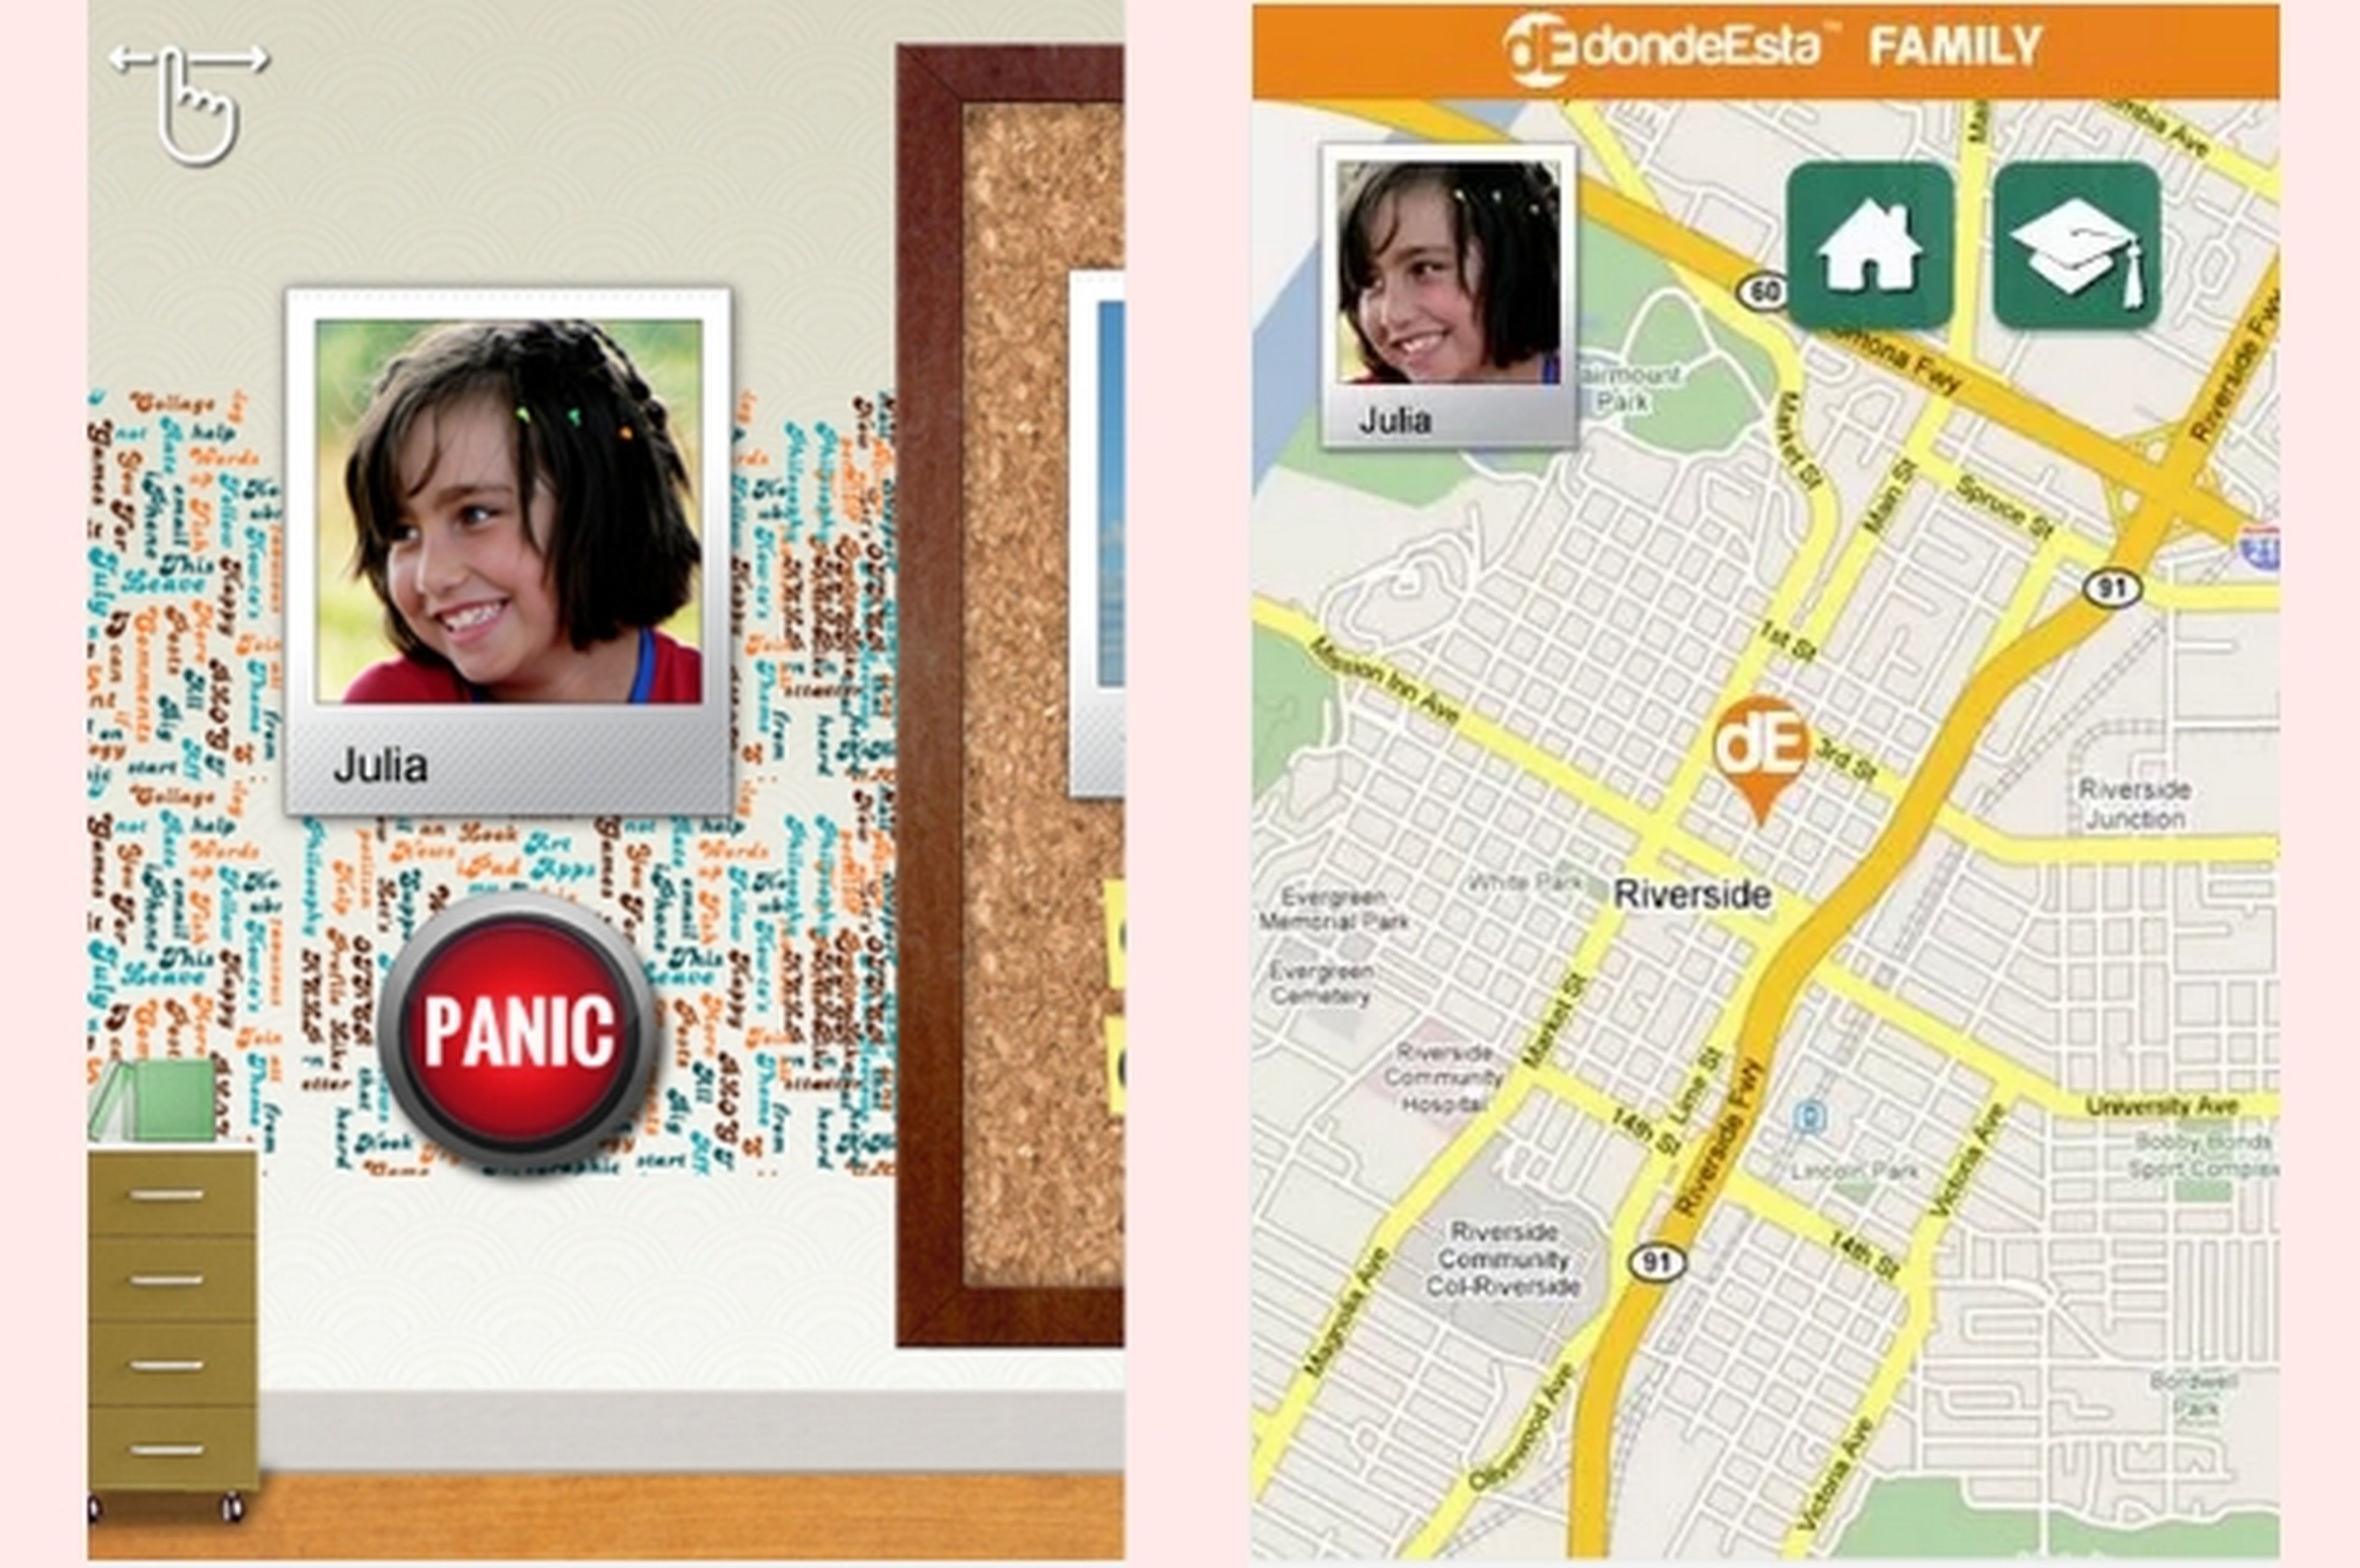 dondeEsta Family te permite saber dónde están tus hijos u otros familiares, por medio del GPS